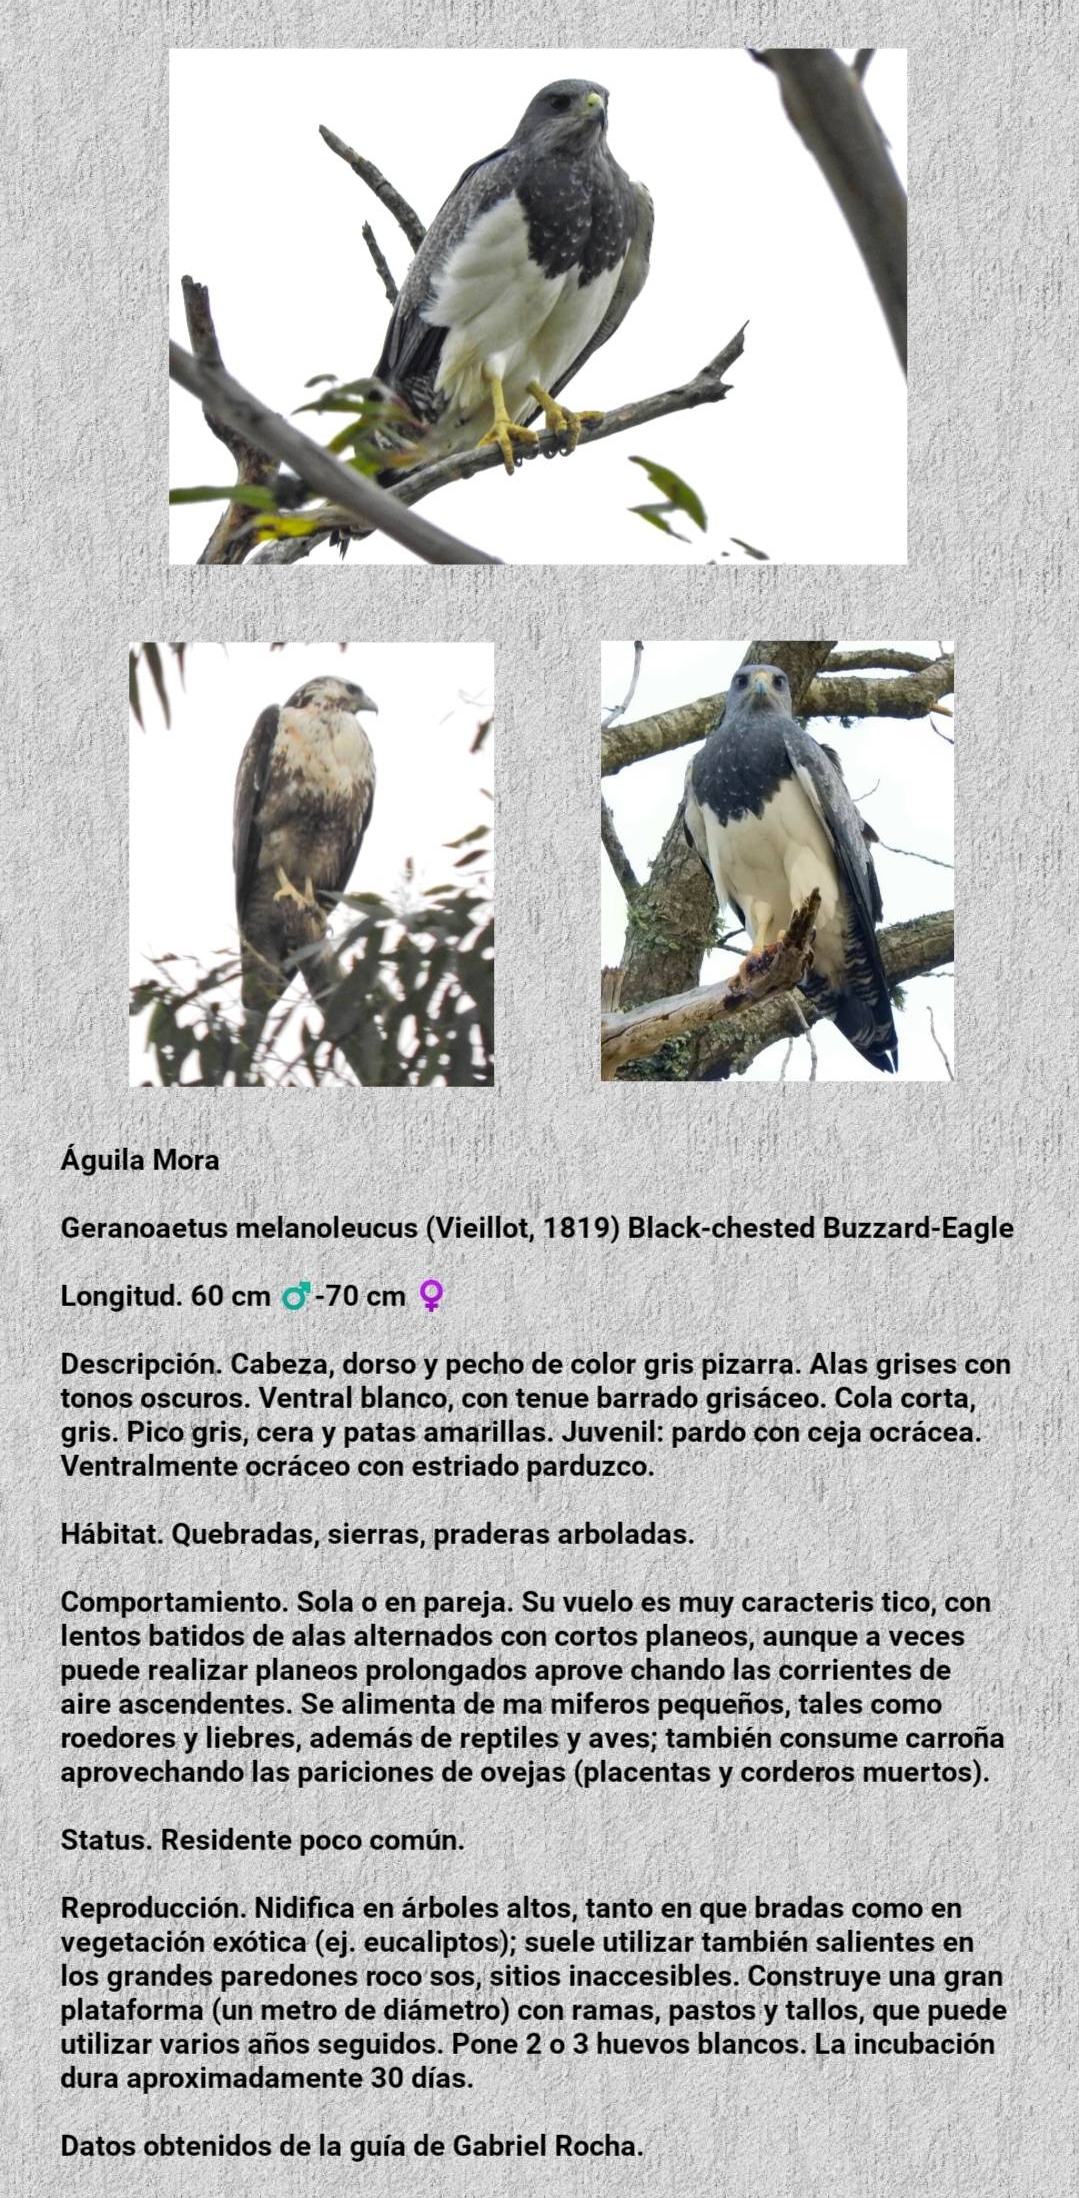 Miércoles de aves, hoy: Águila Mora, que sobrevuela en nuestra ciudad